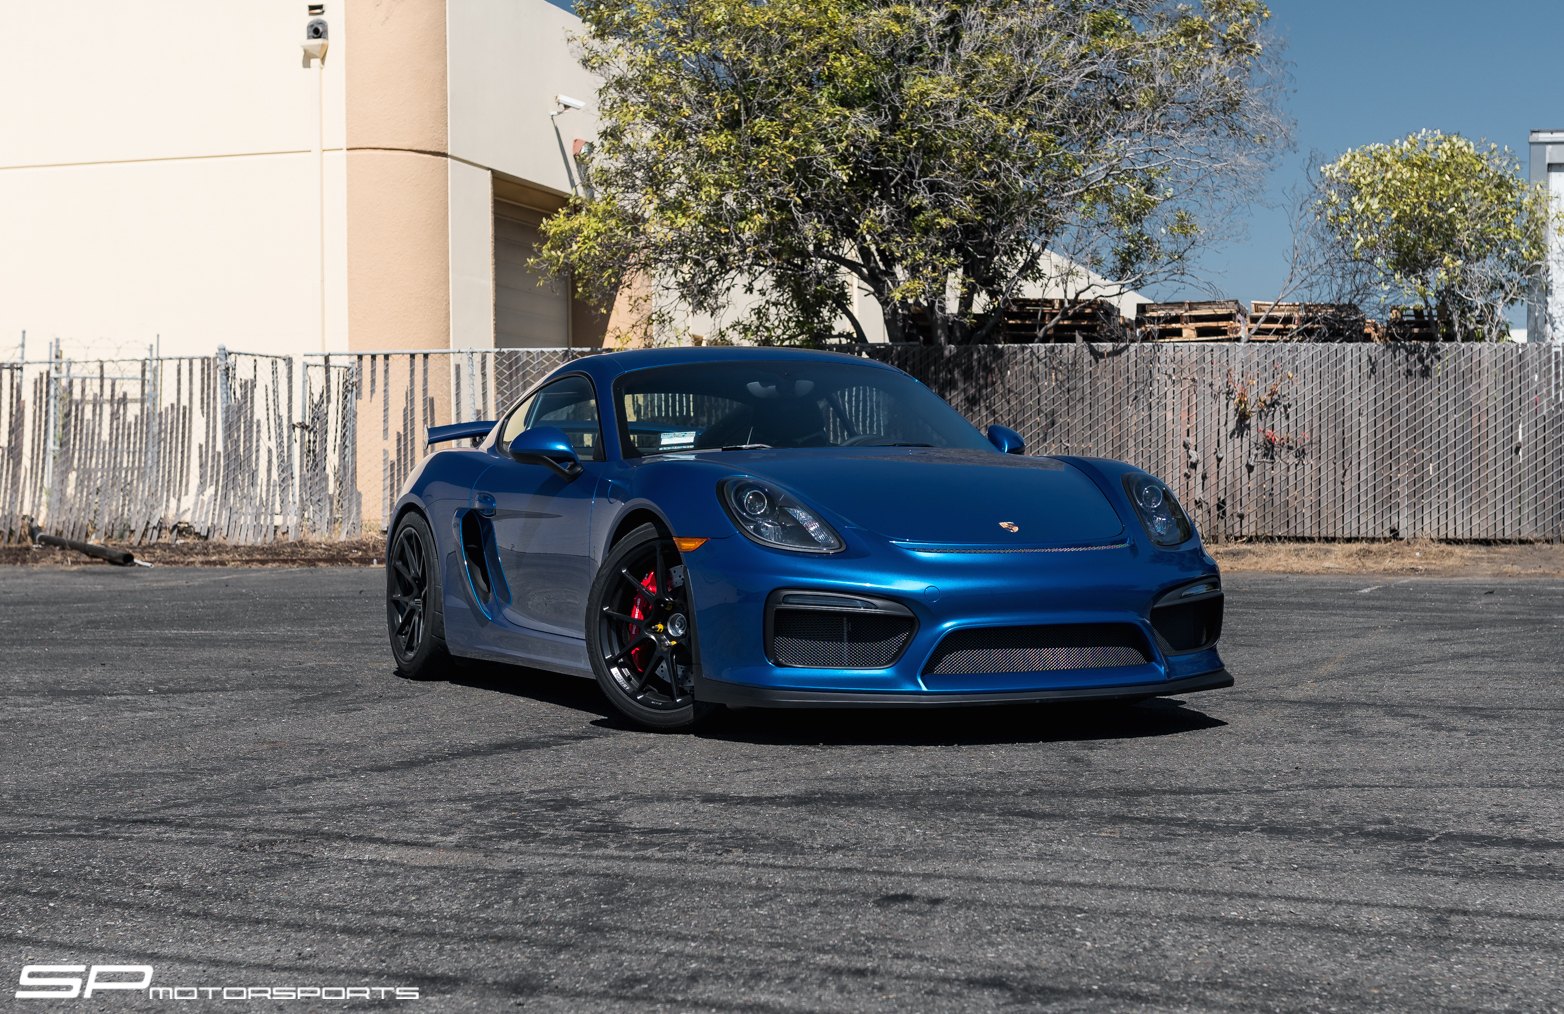 Dark Smoke Halo Headlights on Blue Porsche Cayman - Photo by Forgeline Motorsports